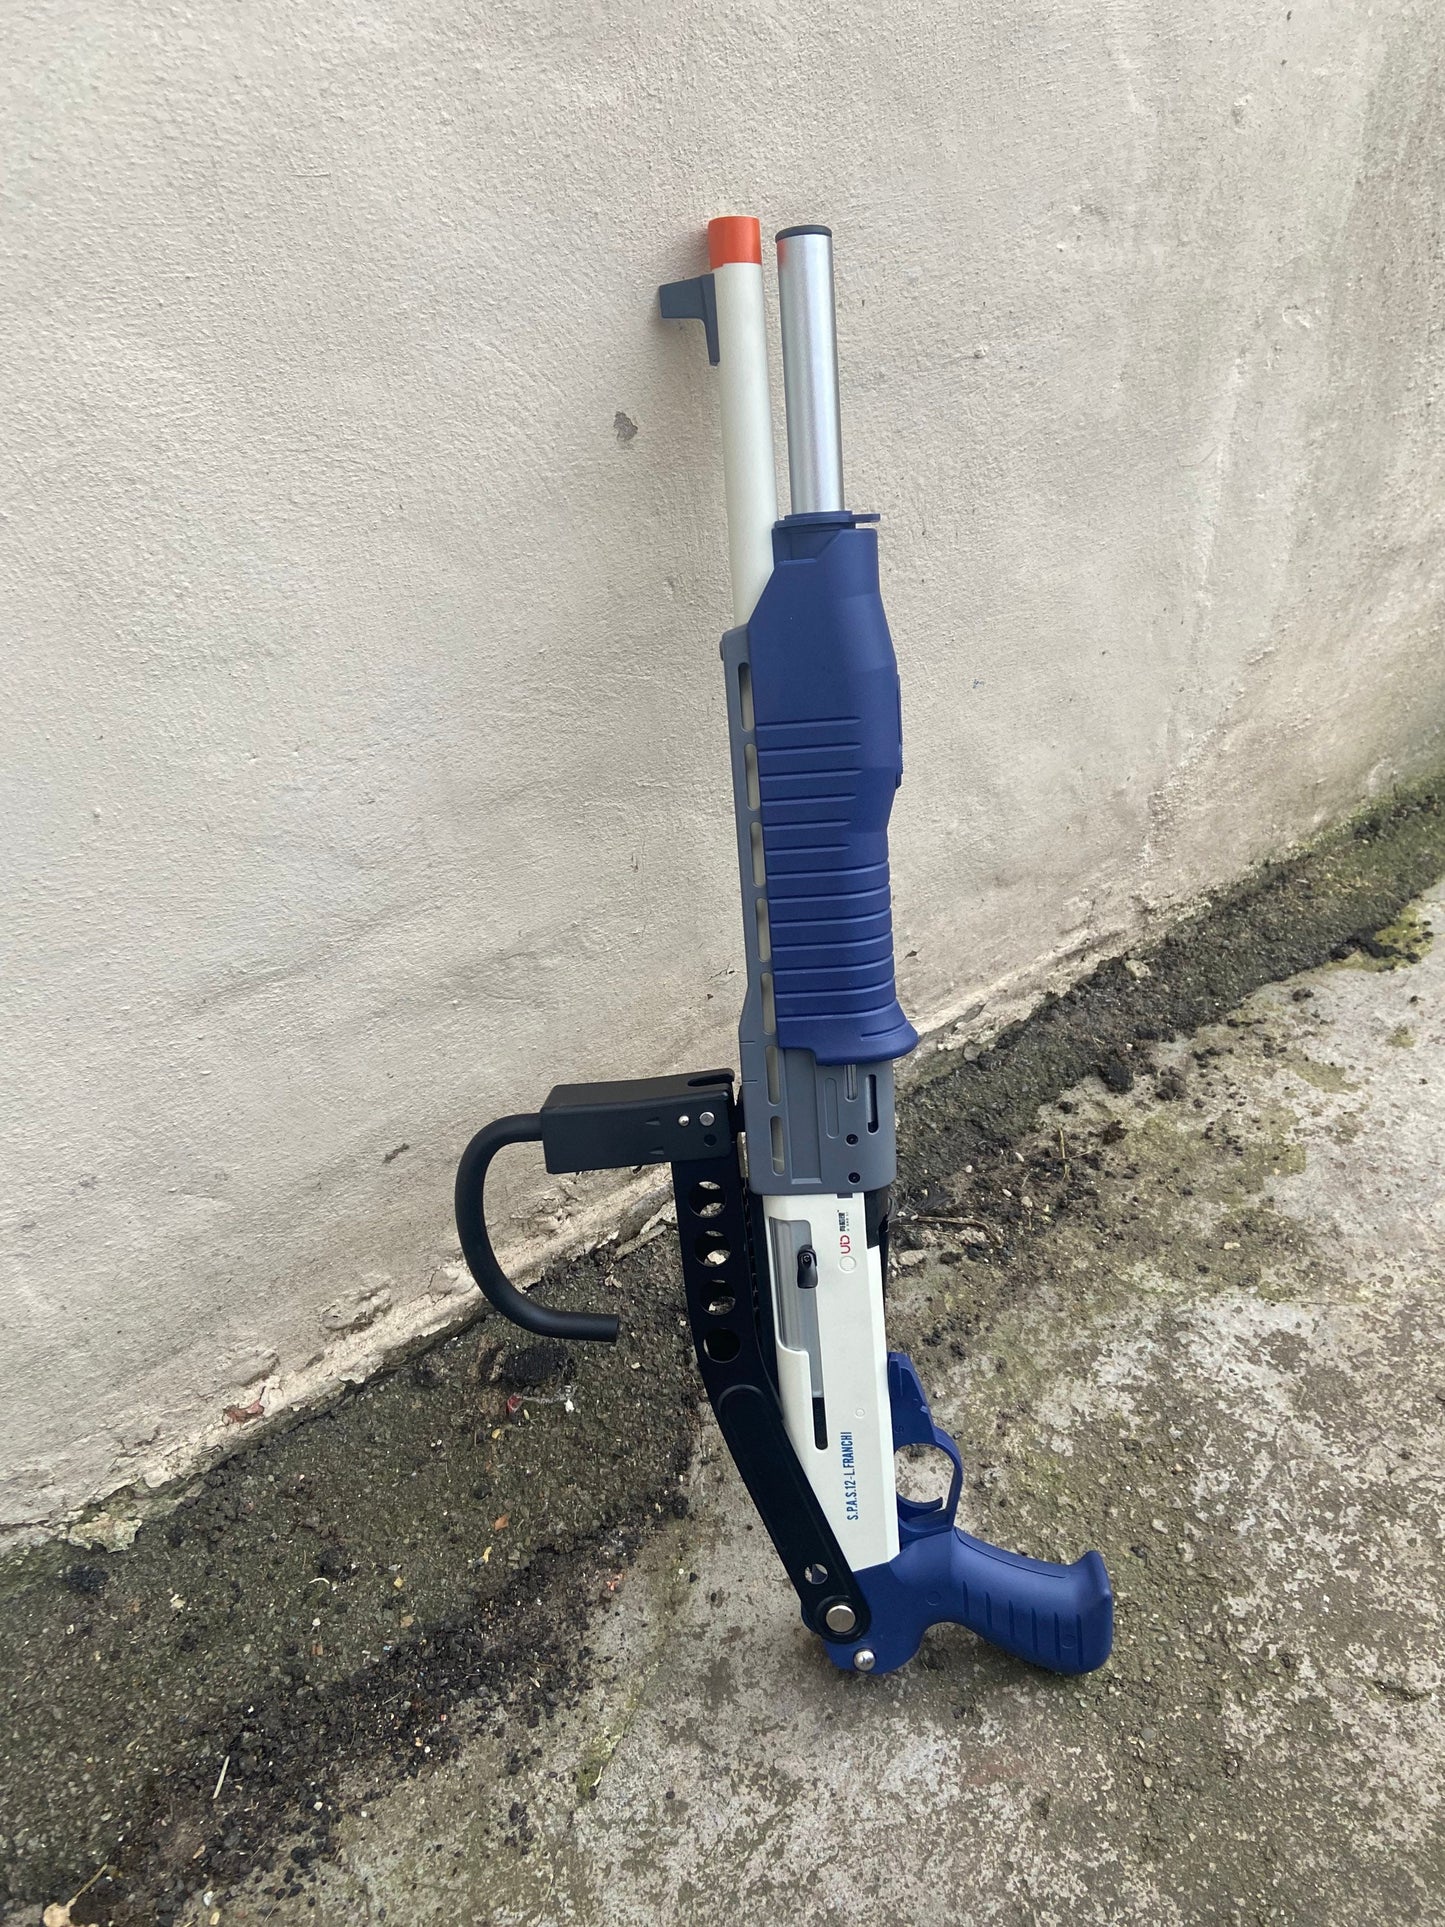 Spas-12 Shotgun Dart Blaster Shell Ejecting - Prop Cosplay Toy Gun